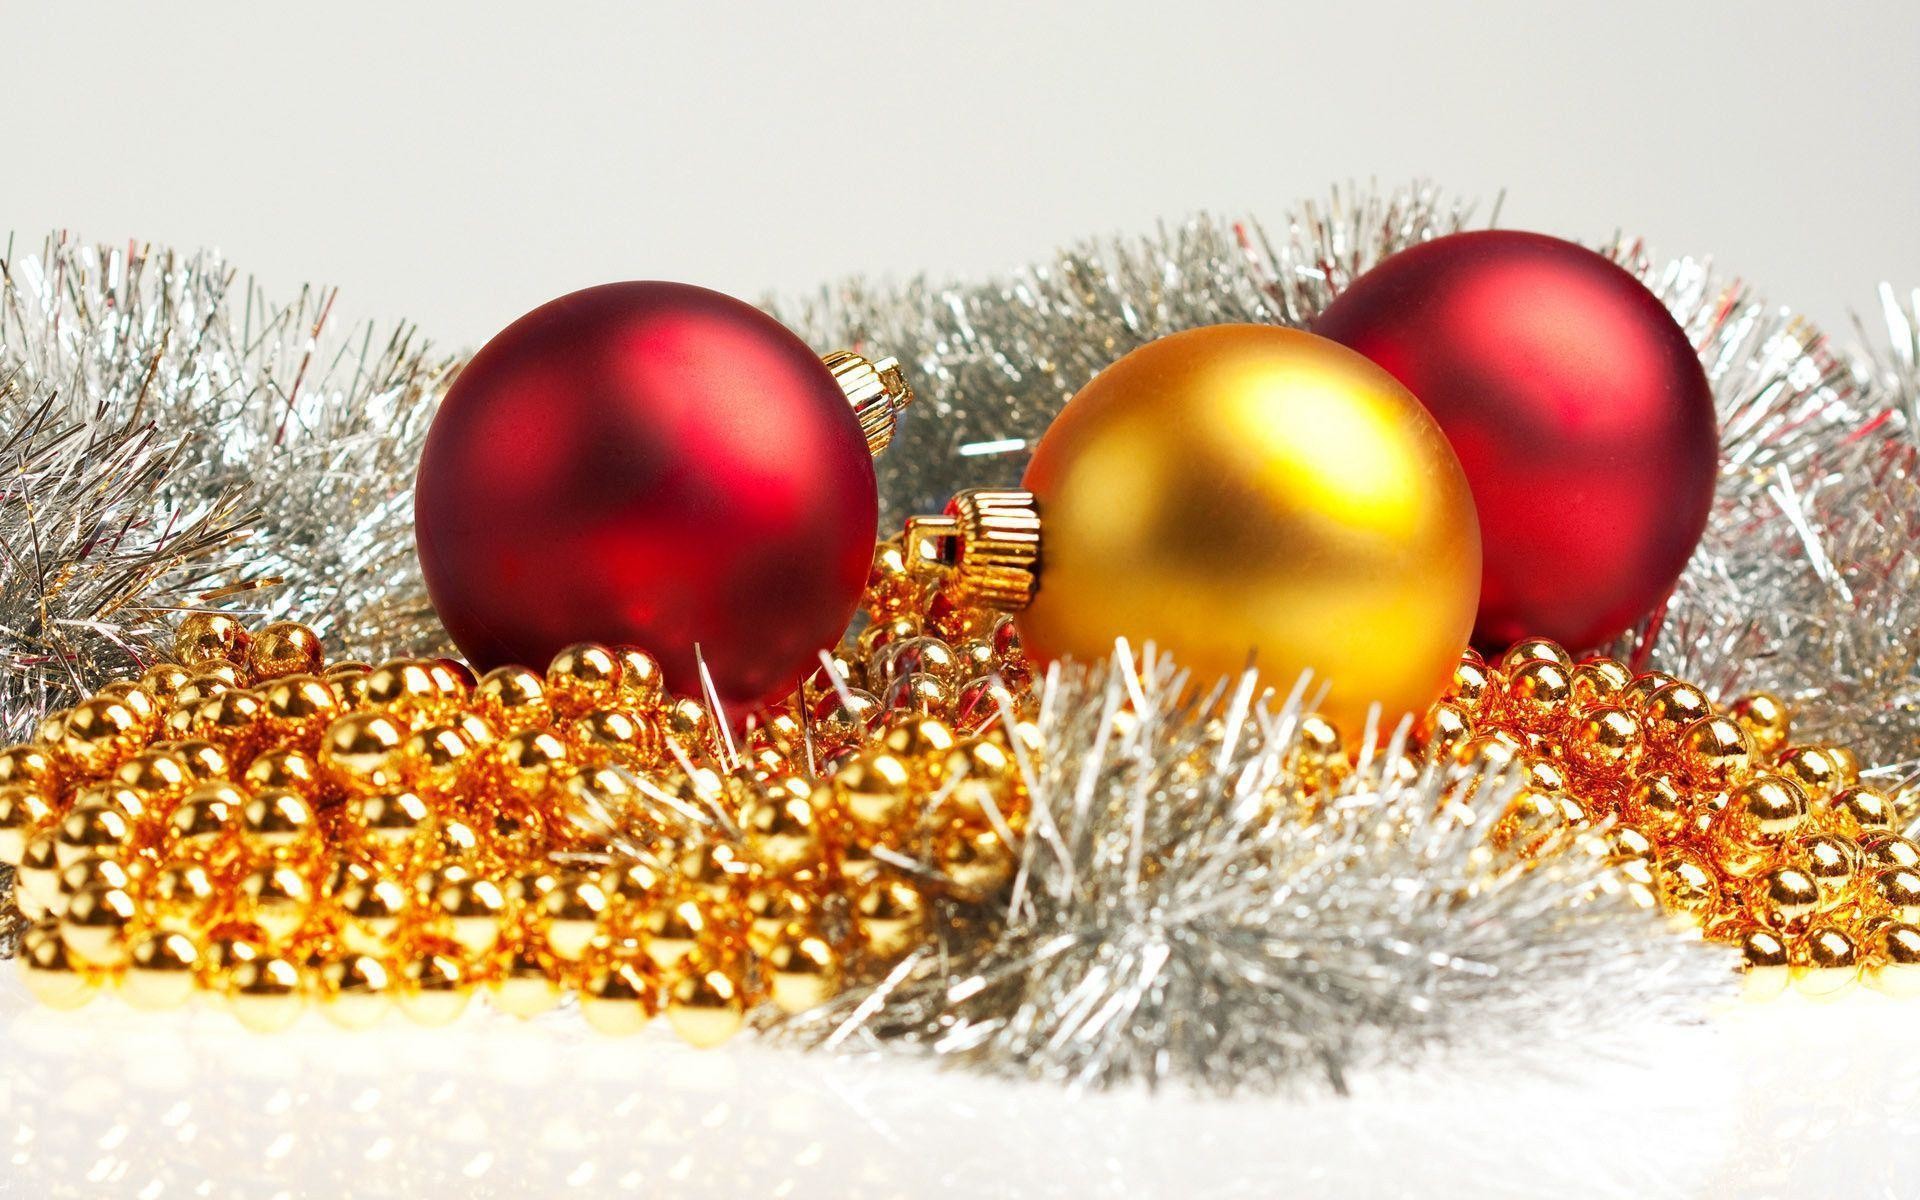 weihnachtstapeten leben kostenlos,weihnachtsschmuck,weihnachtsdekoration,weihnachten,ornament,heiligabend